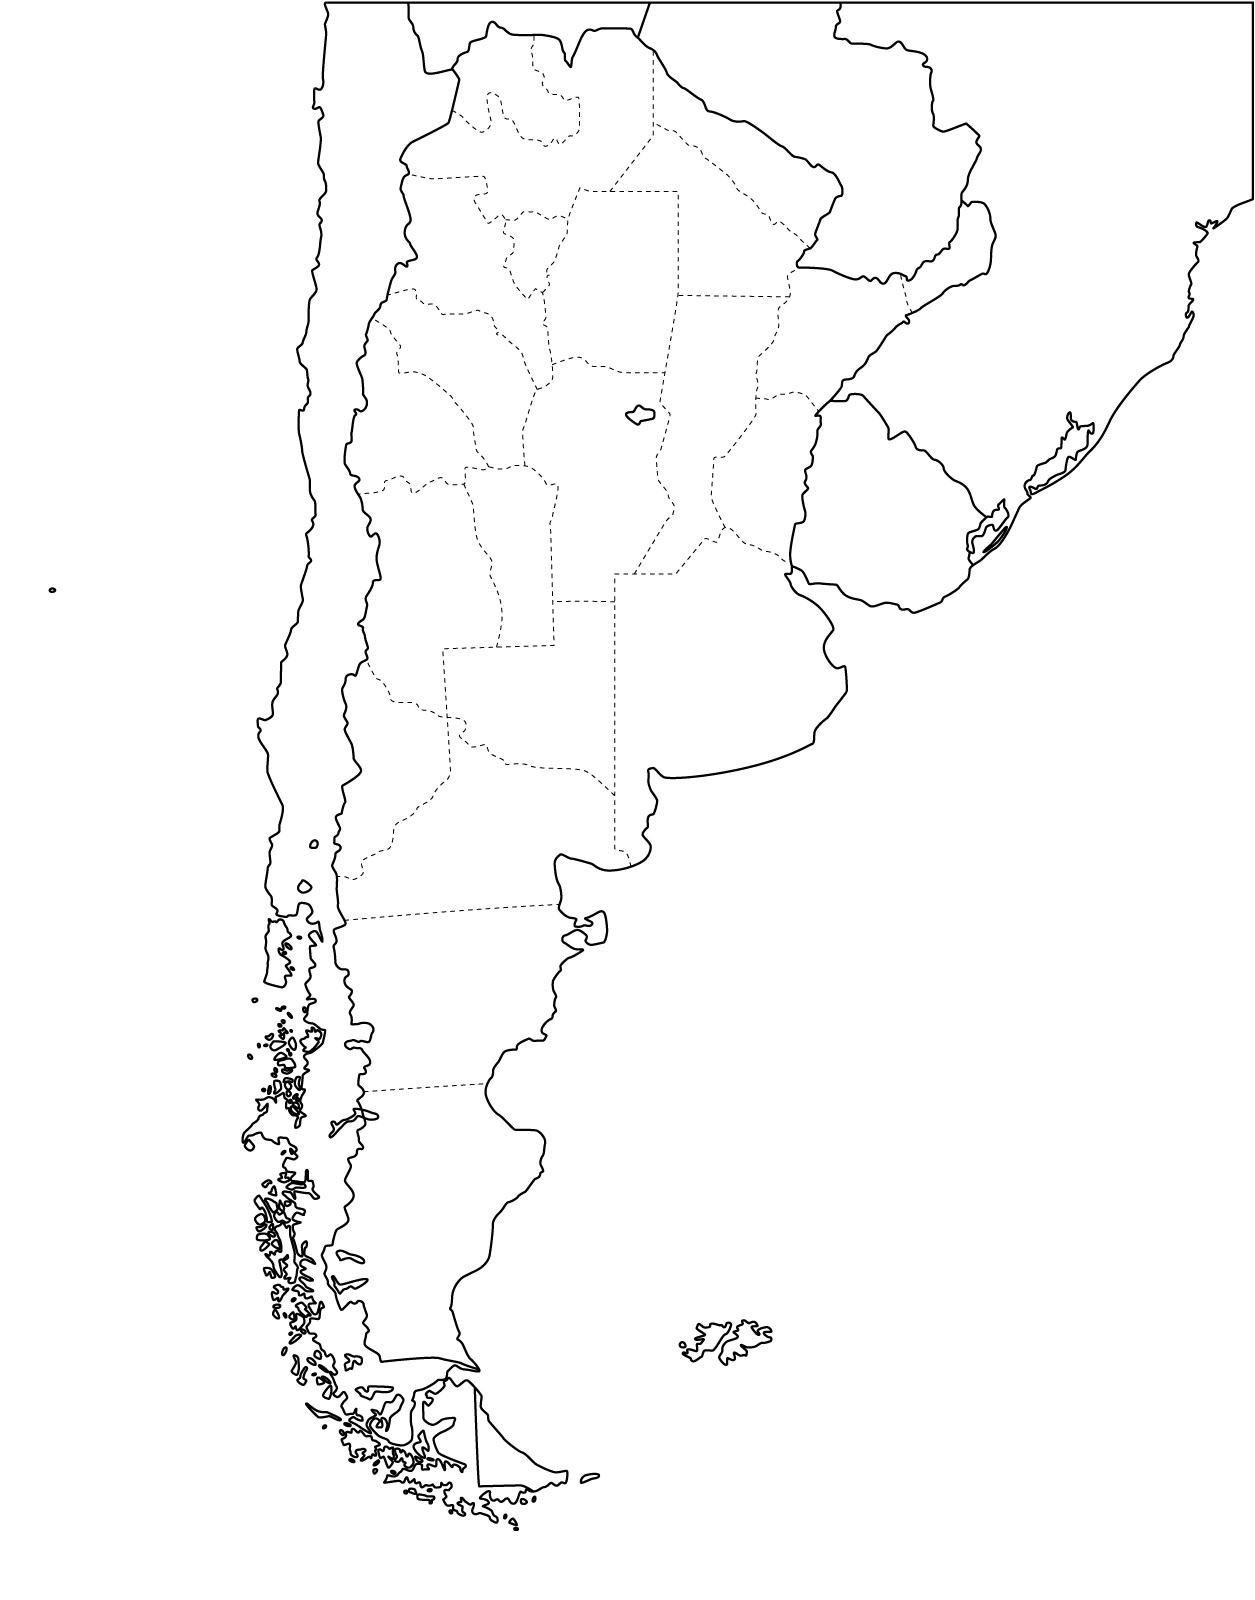 Landkarte von Chile und Argentinien